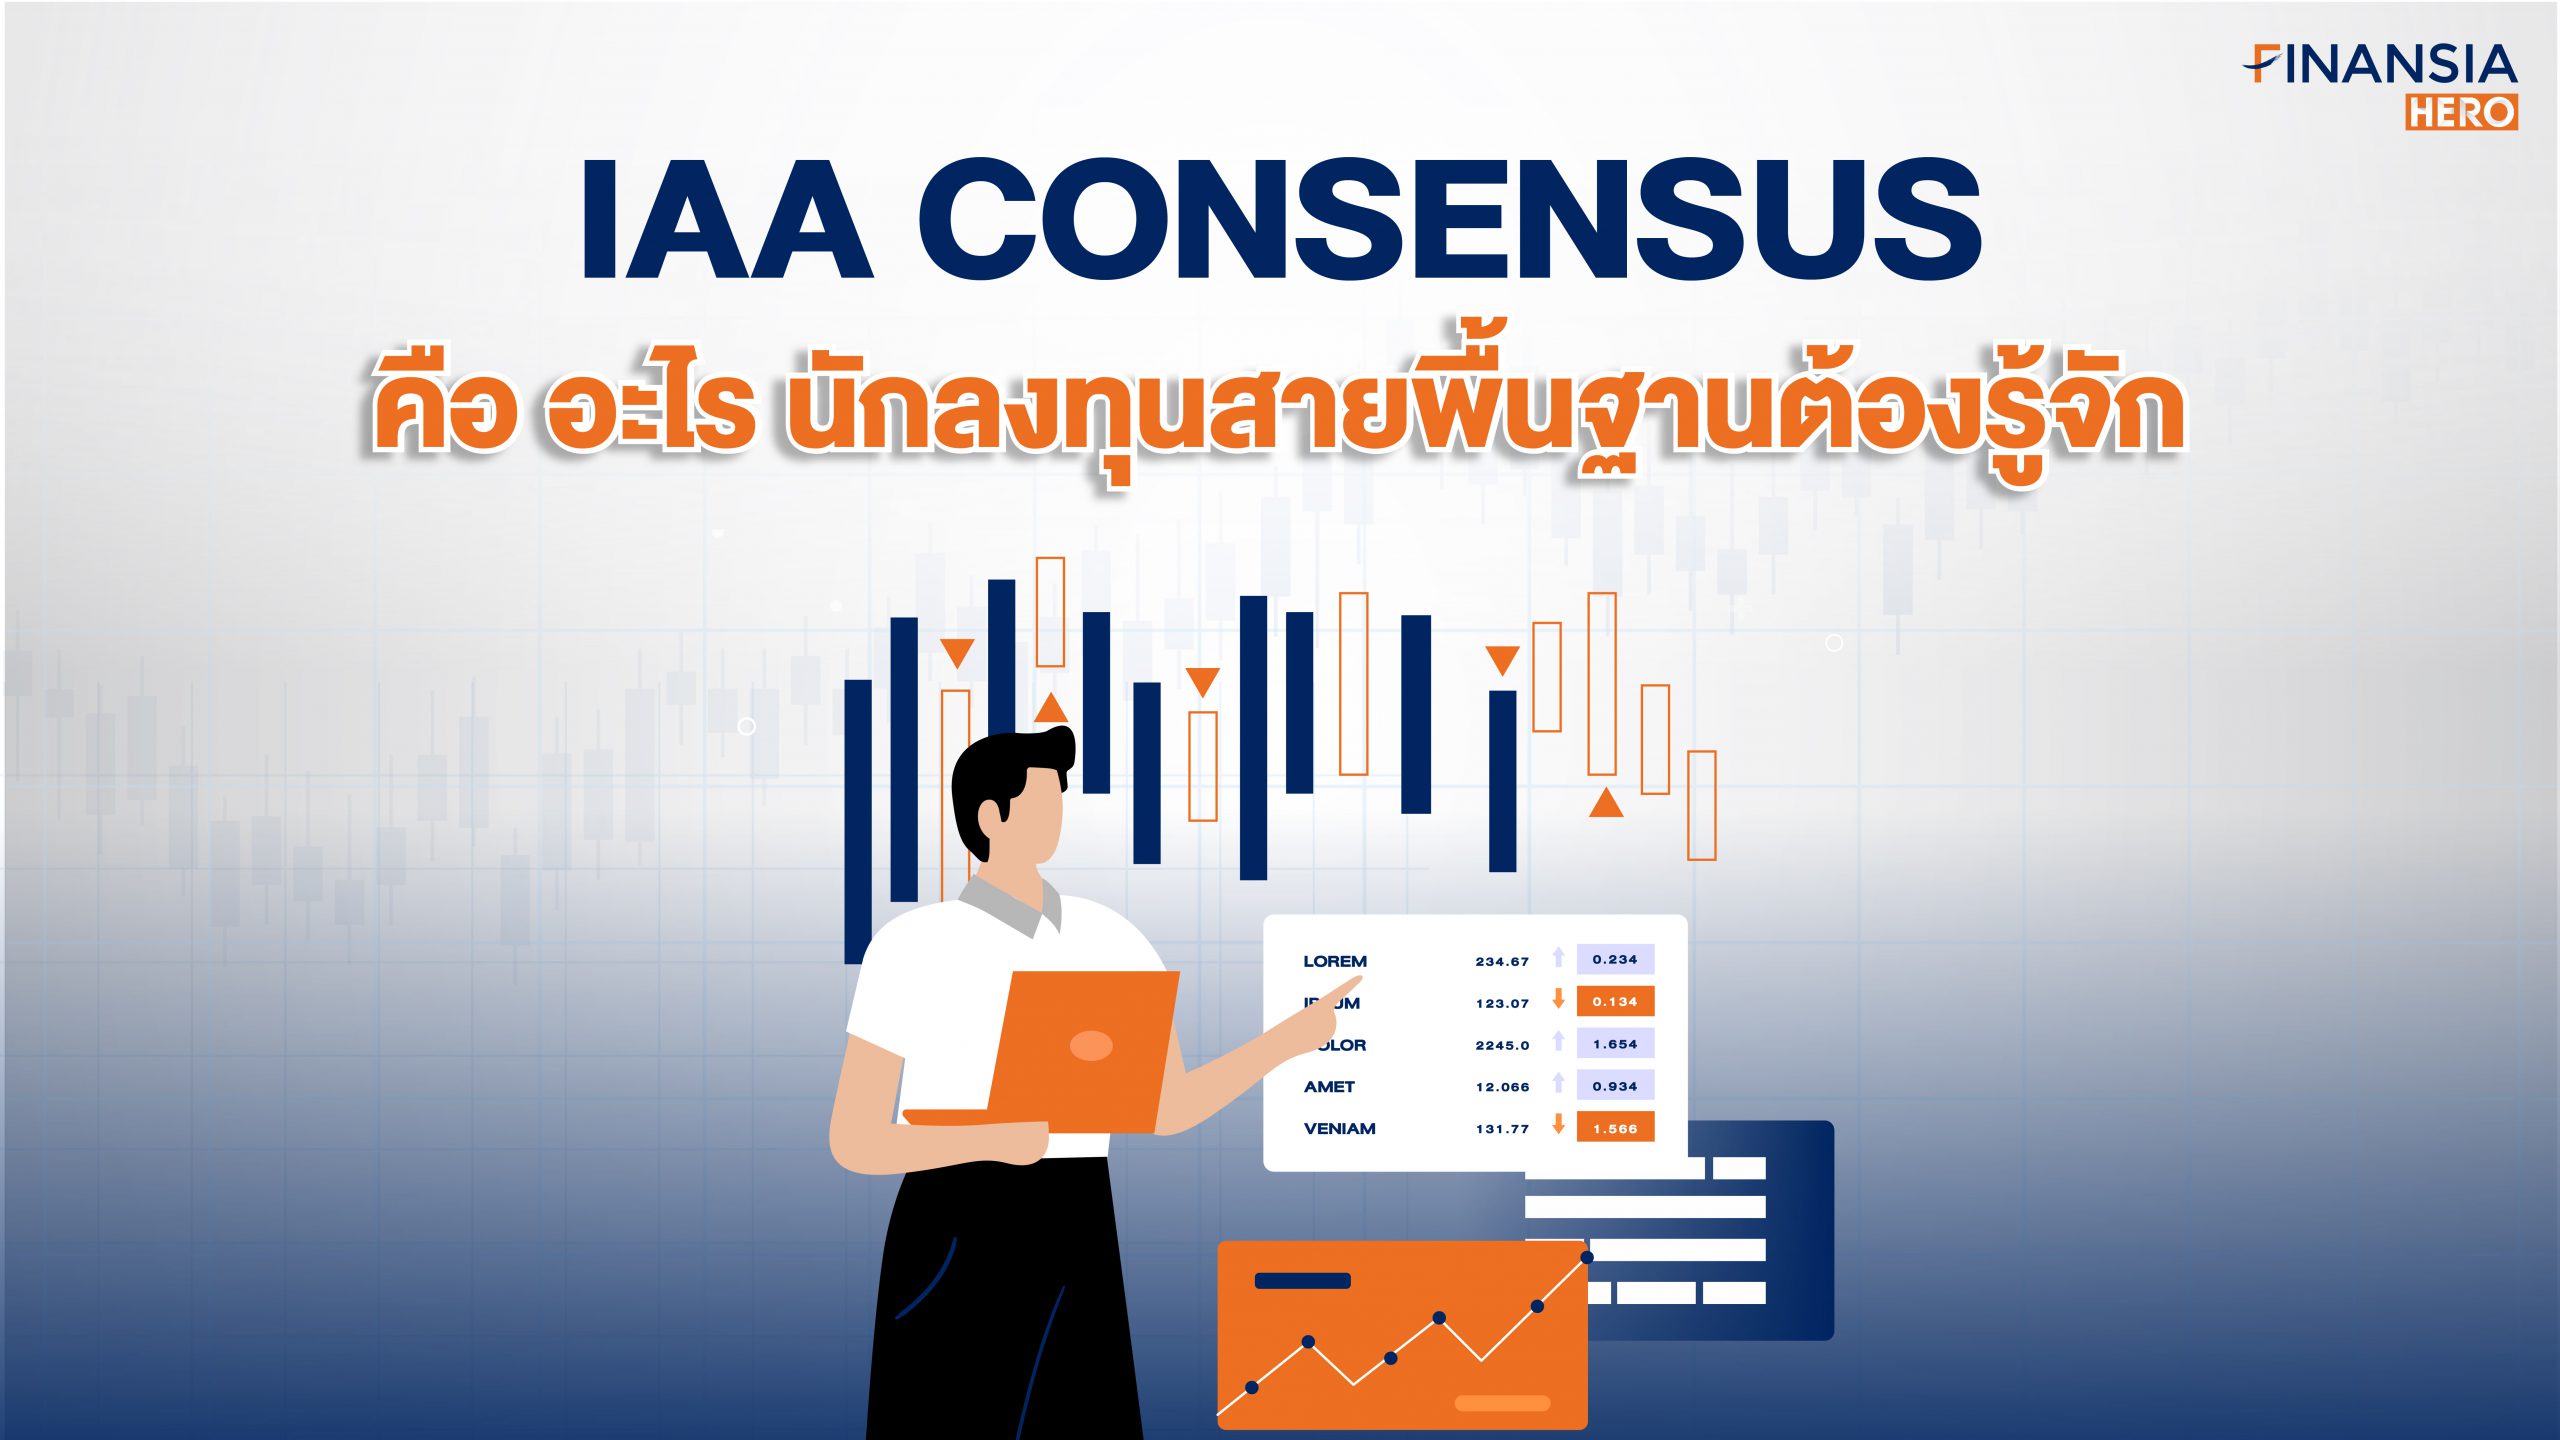 IAA Consensus คืออะไร? นักลงทุนสายพื้นฐานต้องรู้จักในโปรแกรมเทรดหุ้น Finansia HERO